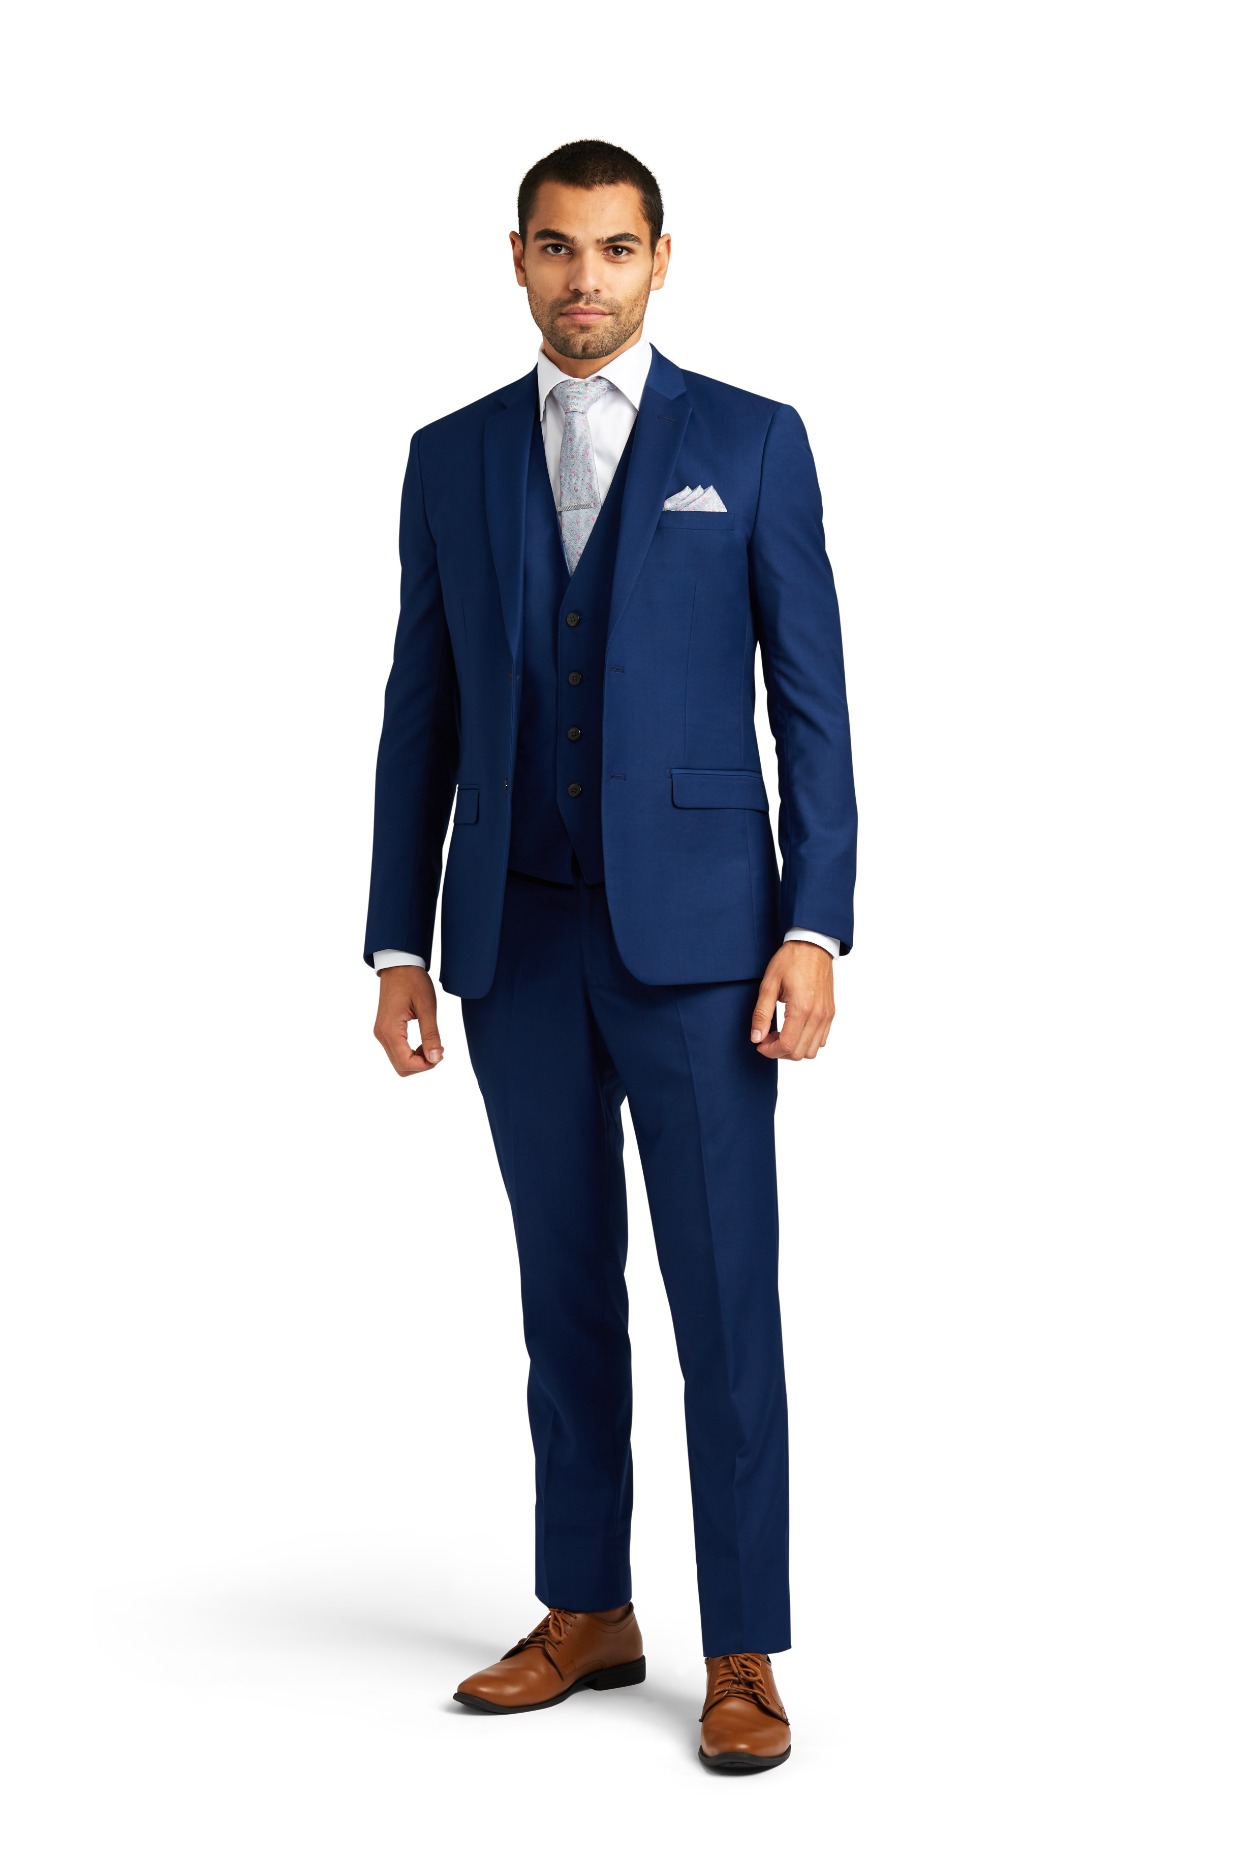 Cobalt blue stretch wedding suit from Stitch & Tie